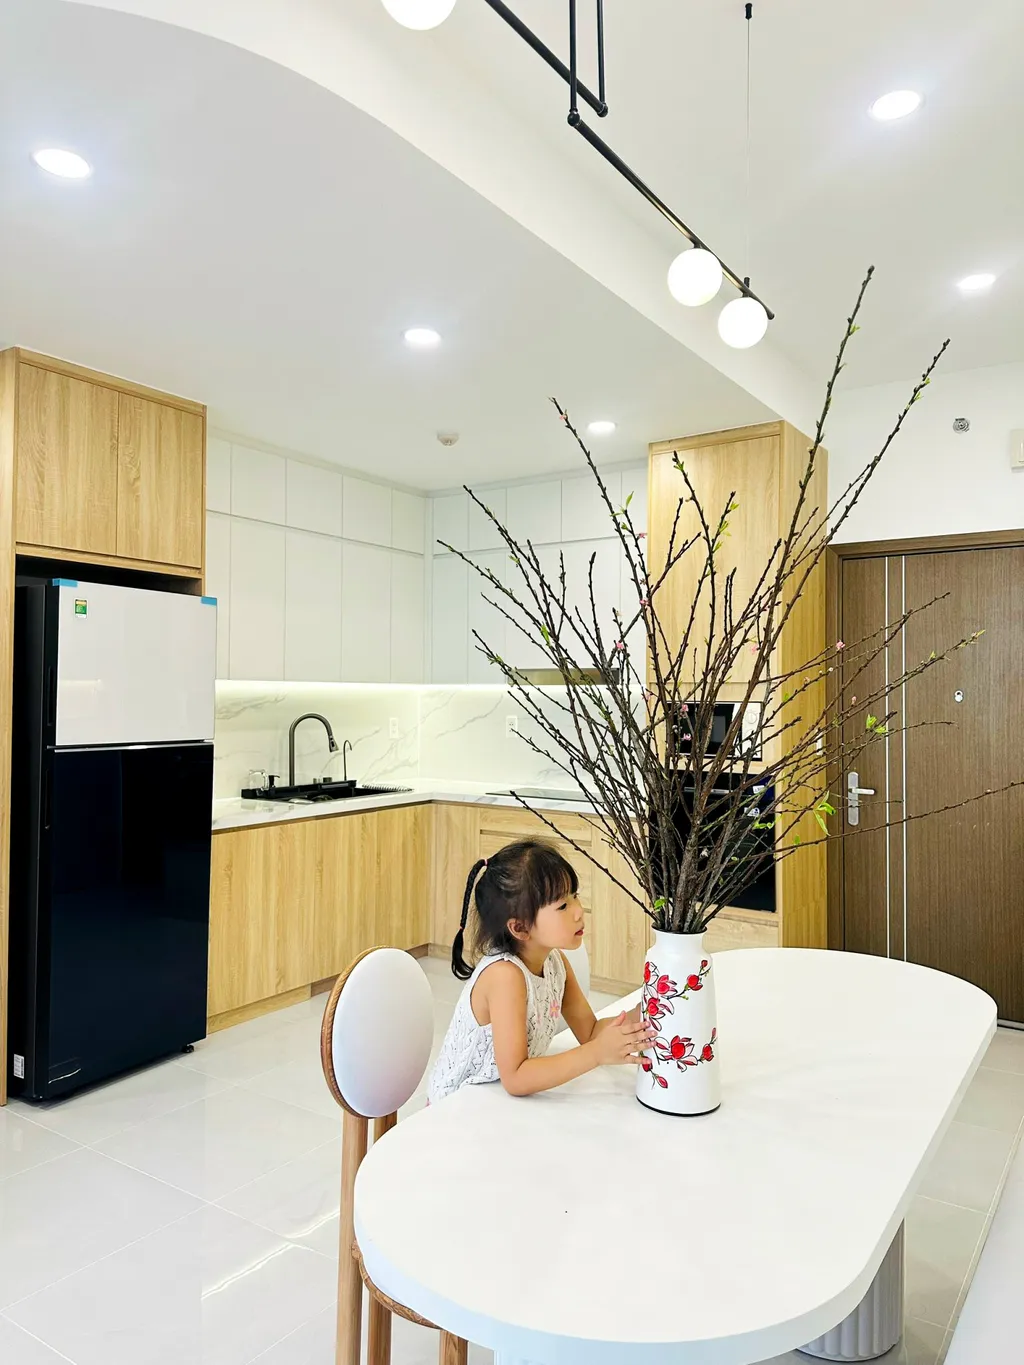 Hoàn thiện nội thất nhà bếp Căn hộ Thảo Điền Quận 2 mang phong cách Japandi